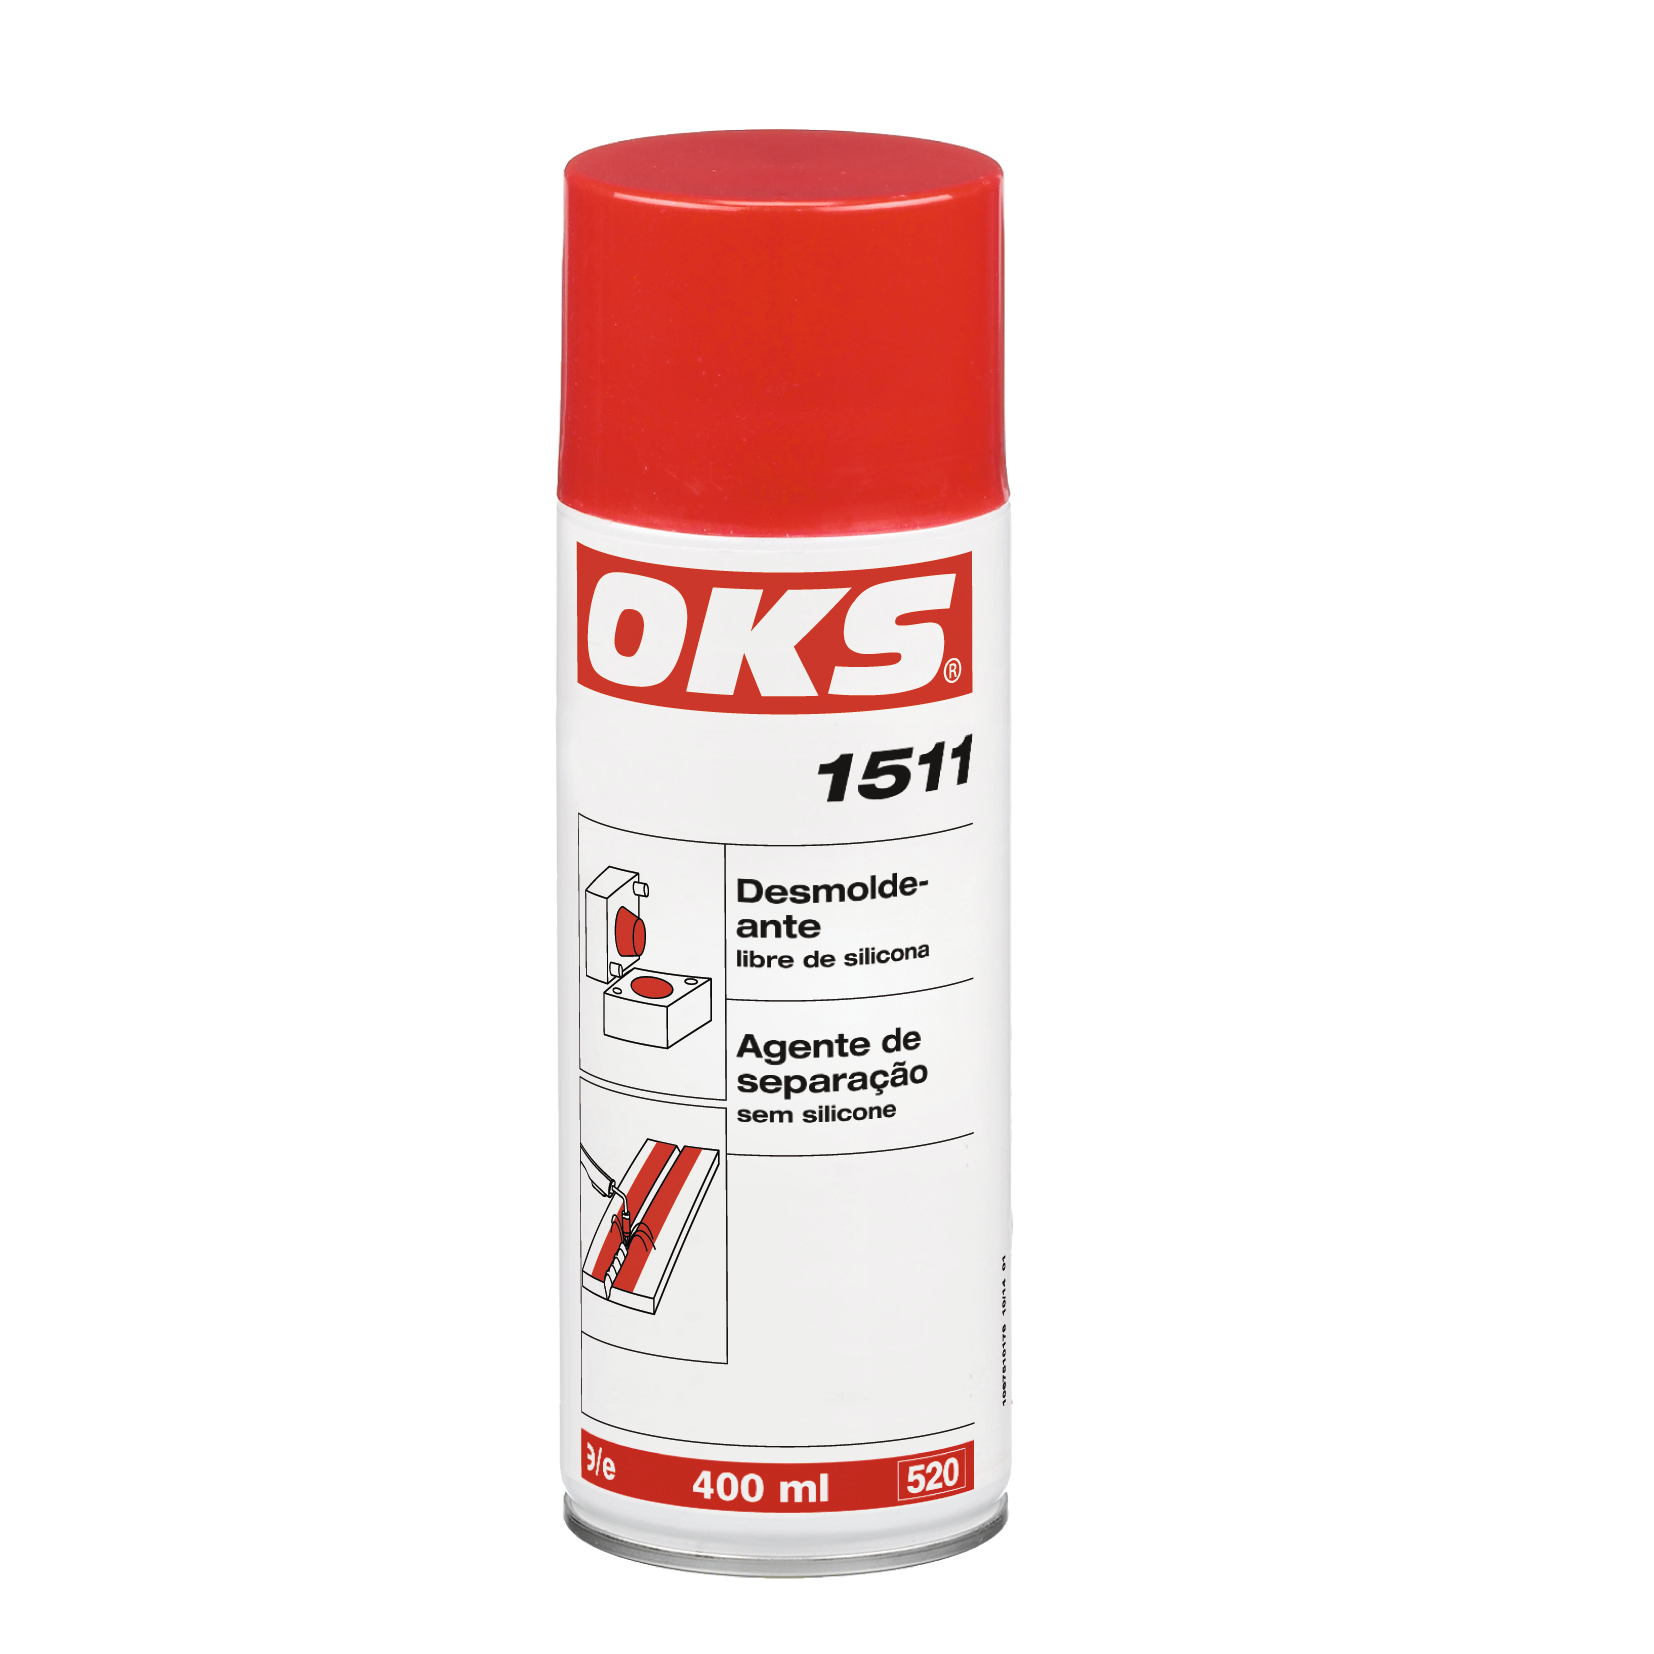 OKS1511-400ML OKS 1511 is een siliconenvrij lossingsmiddel met zeer effectieve substanties uit duurzame grondstoffen.